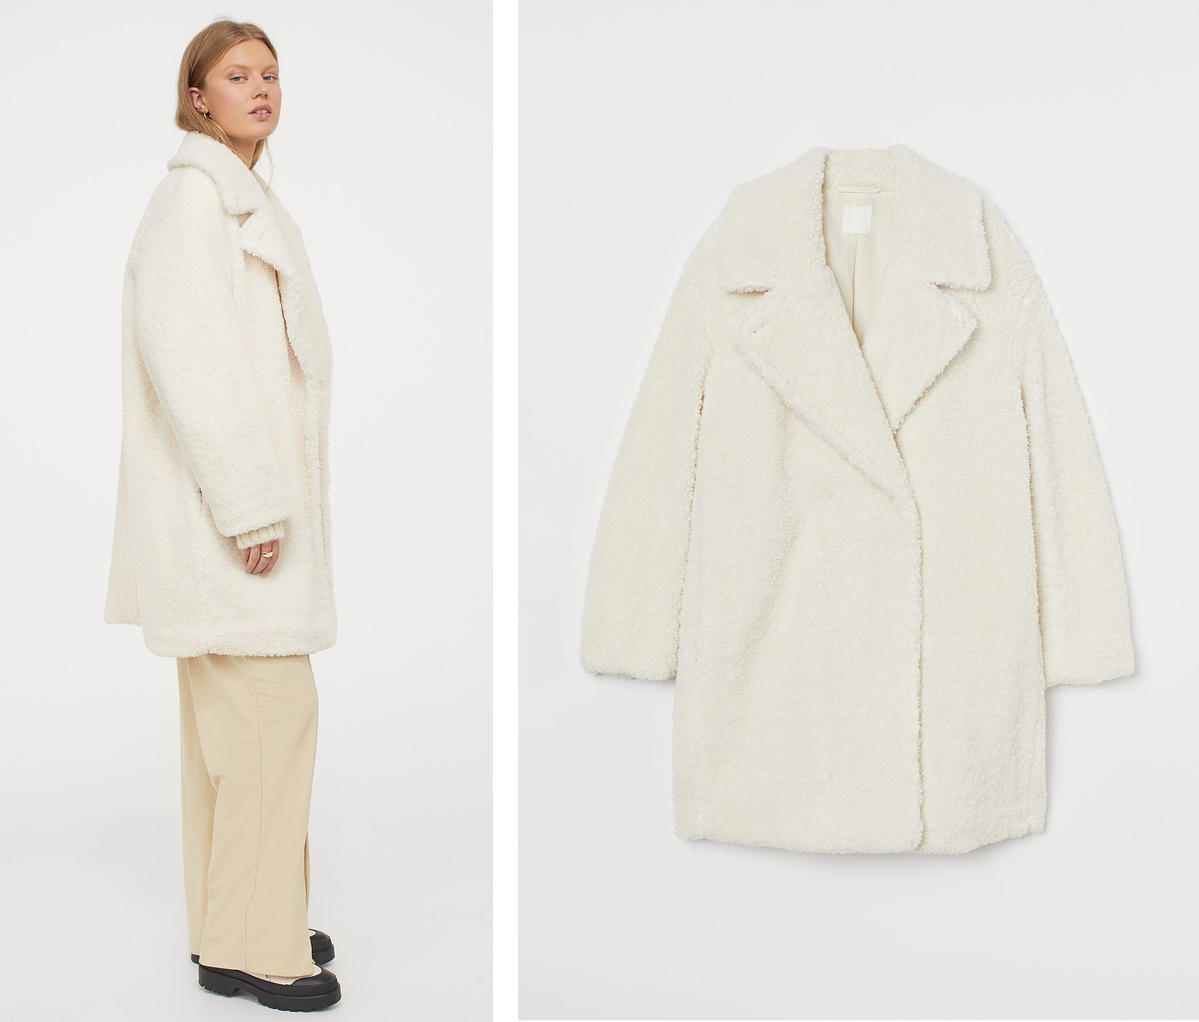 Sylwia Bomba z „Gogglebox” w supermodnym płaszczu z H&M. Jest idealny na zimę